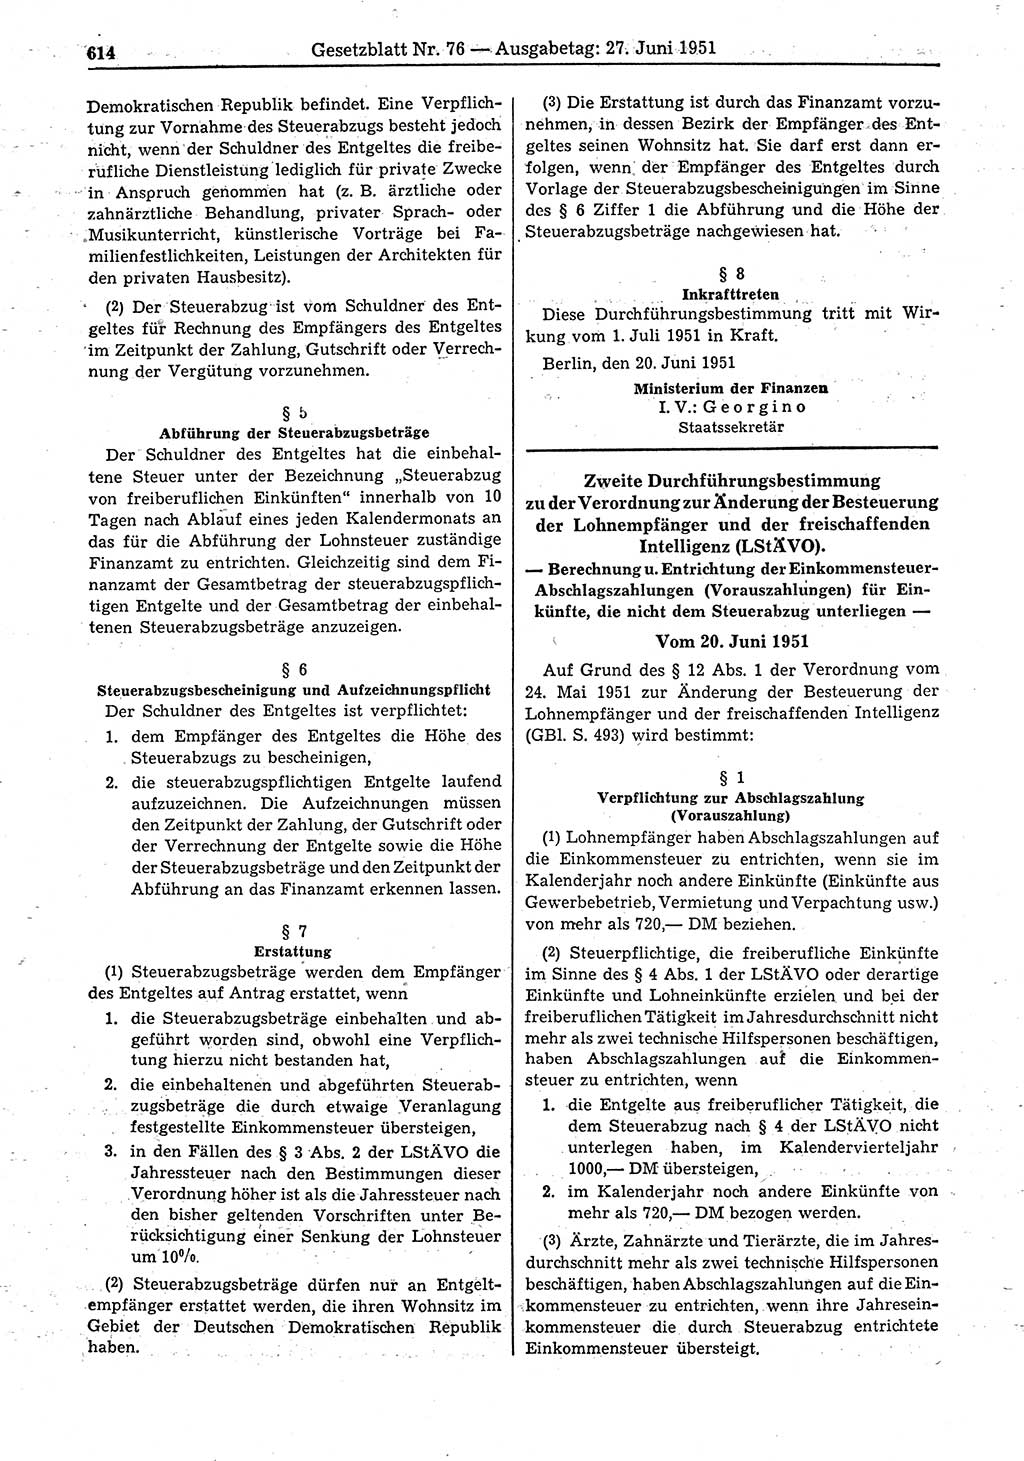 Gesetzblatt (GBl.) der Deutschen Demokratischen Republik (DDR) 1951, Seite 614 (GBl. DDR 1951, S. 614)